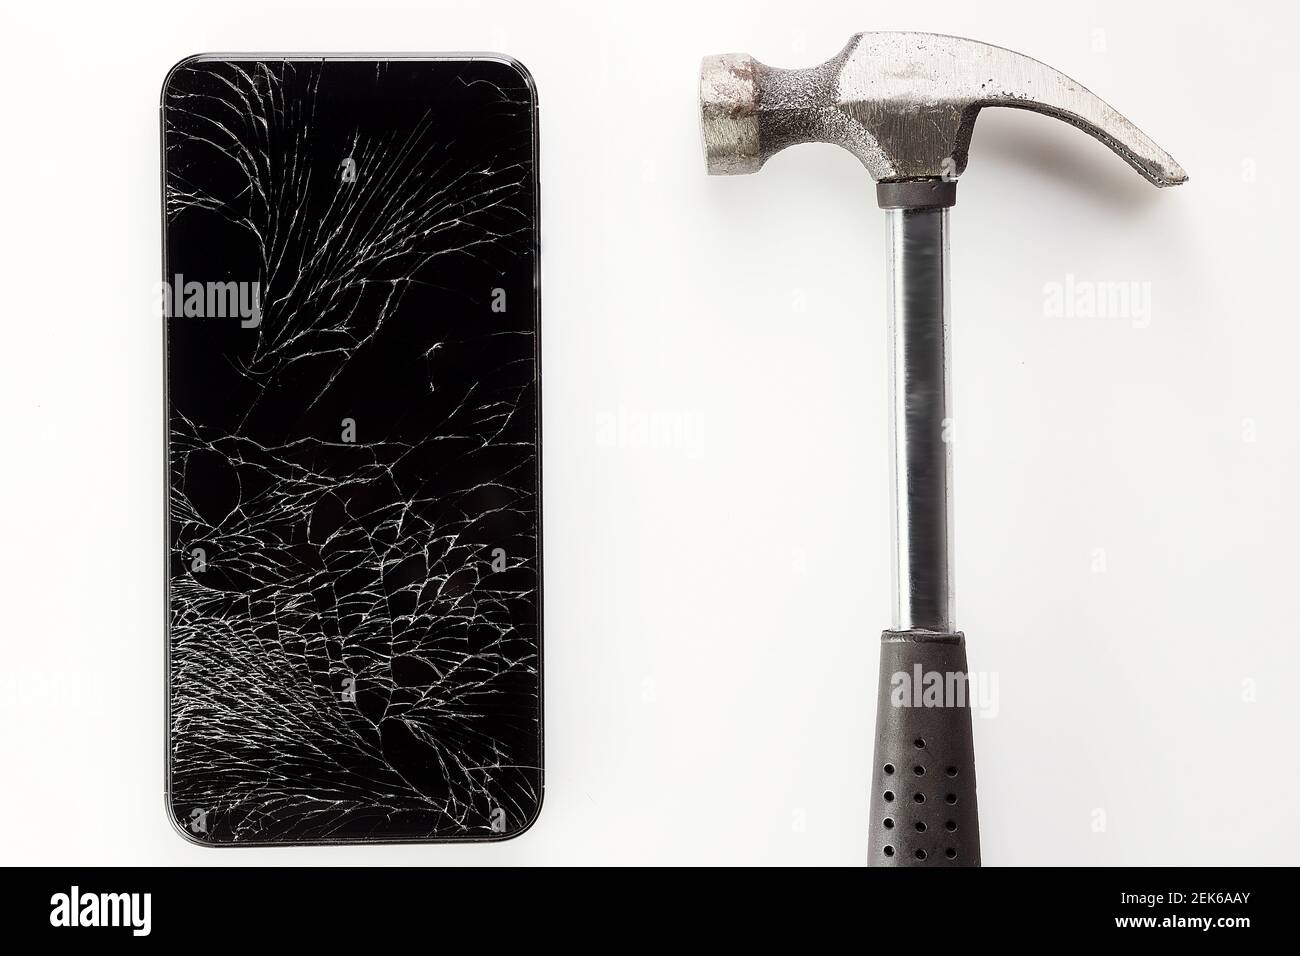 Un smartphone noir cassé avec un écran fissuré et un marteau en métal se trouve sur un fond blanc. Banque D'Images